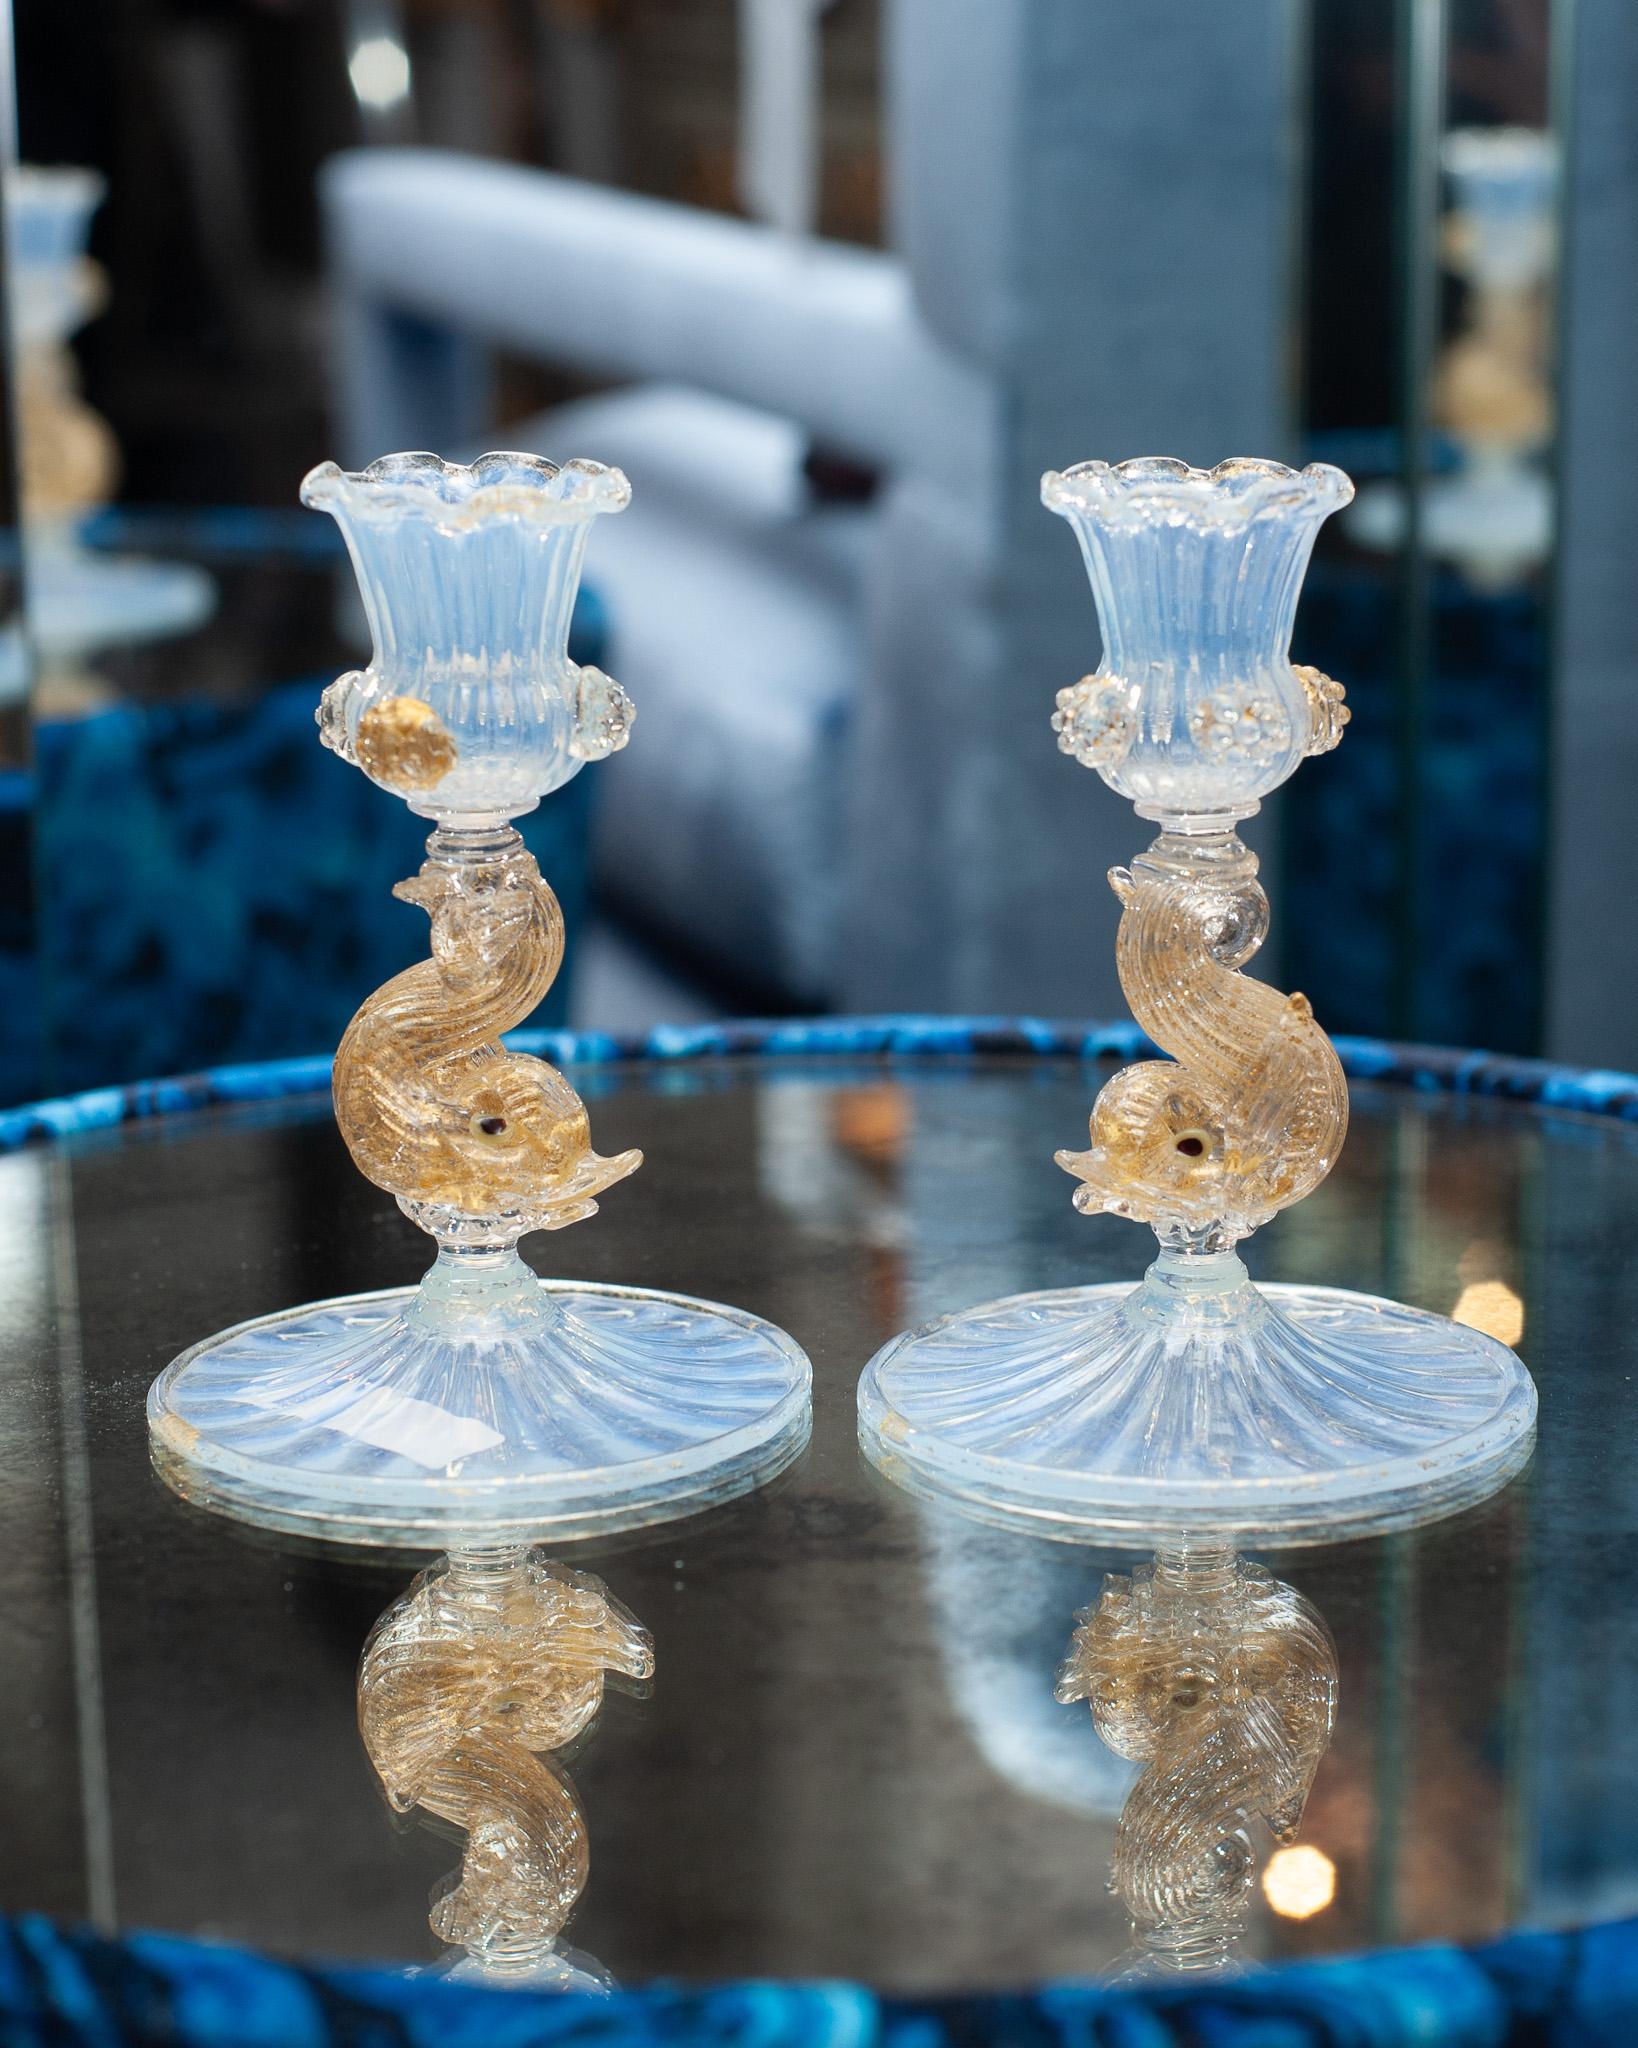 Superbe paire de chandeliers anciens en verre vénitien de Murano, en verre opalescent et feuille d'or, avec motif de dauphins. Il s'agit d'un chandelier parfait de petite taille et il est magnifiquement fabriqué. Ces chandeliers seraient un ajout